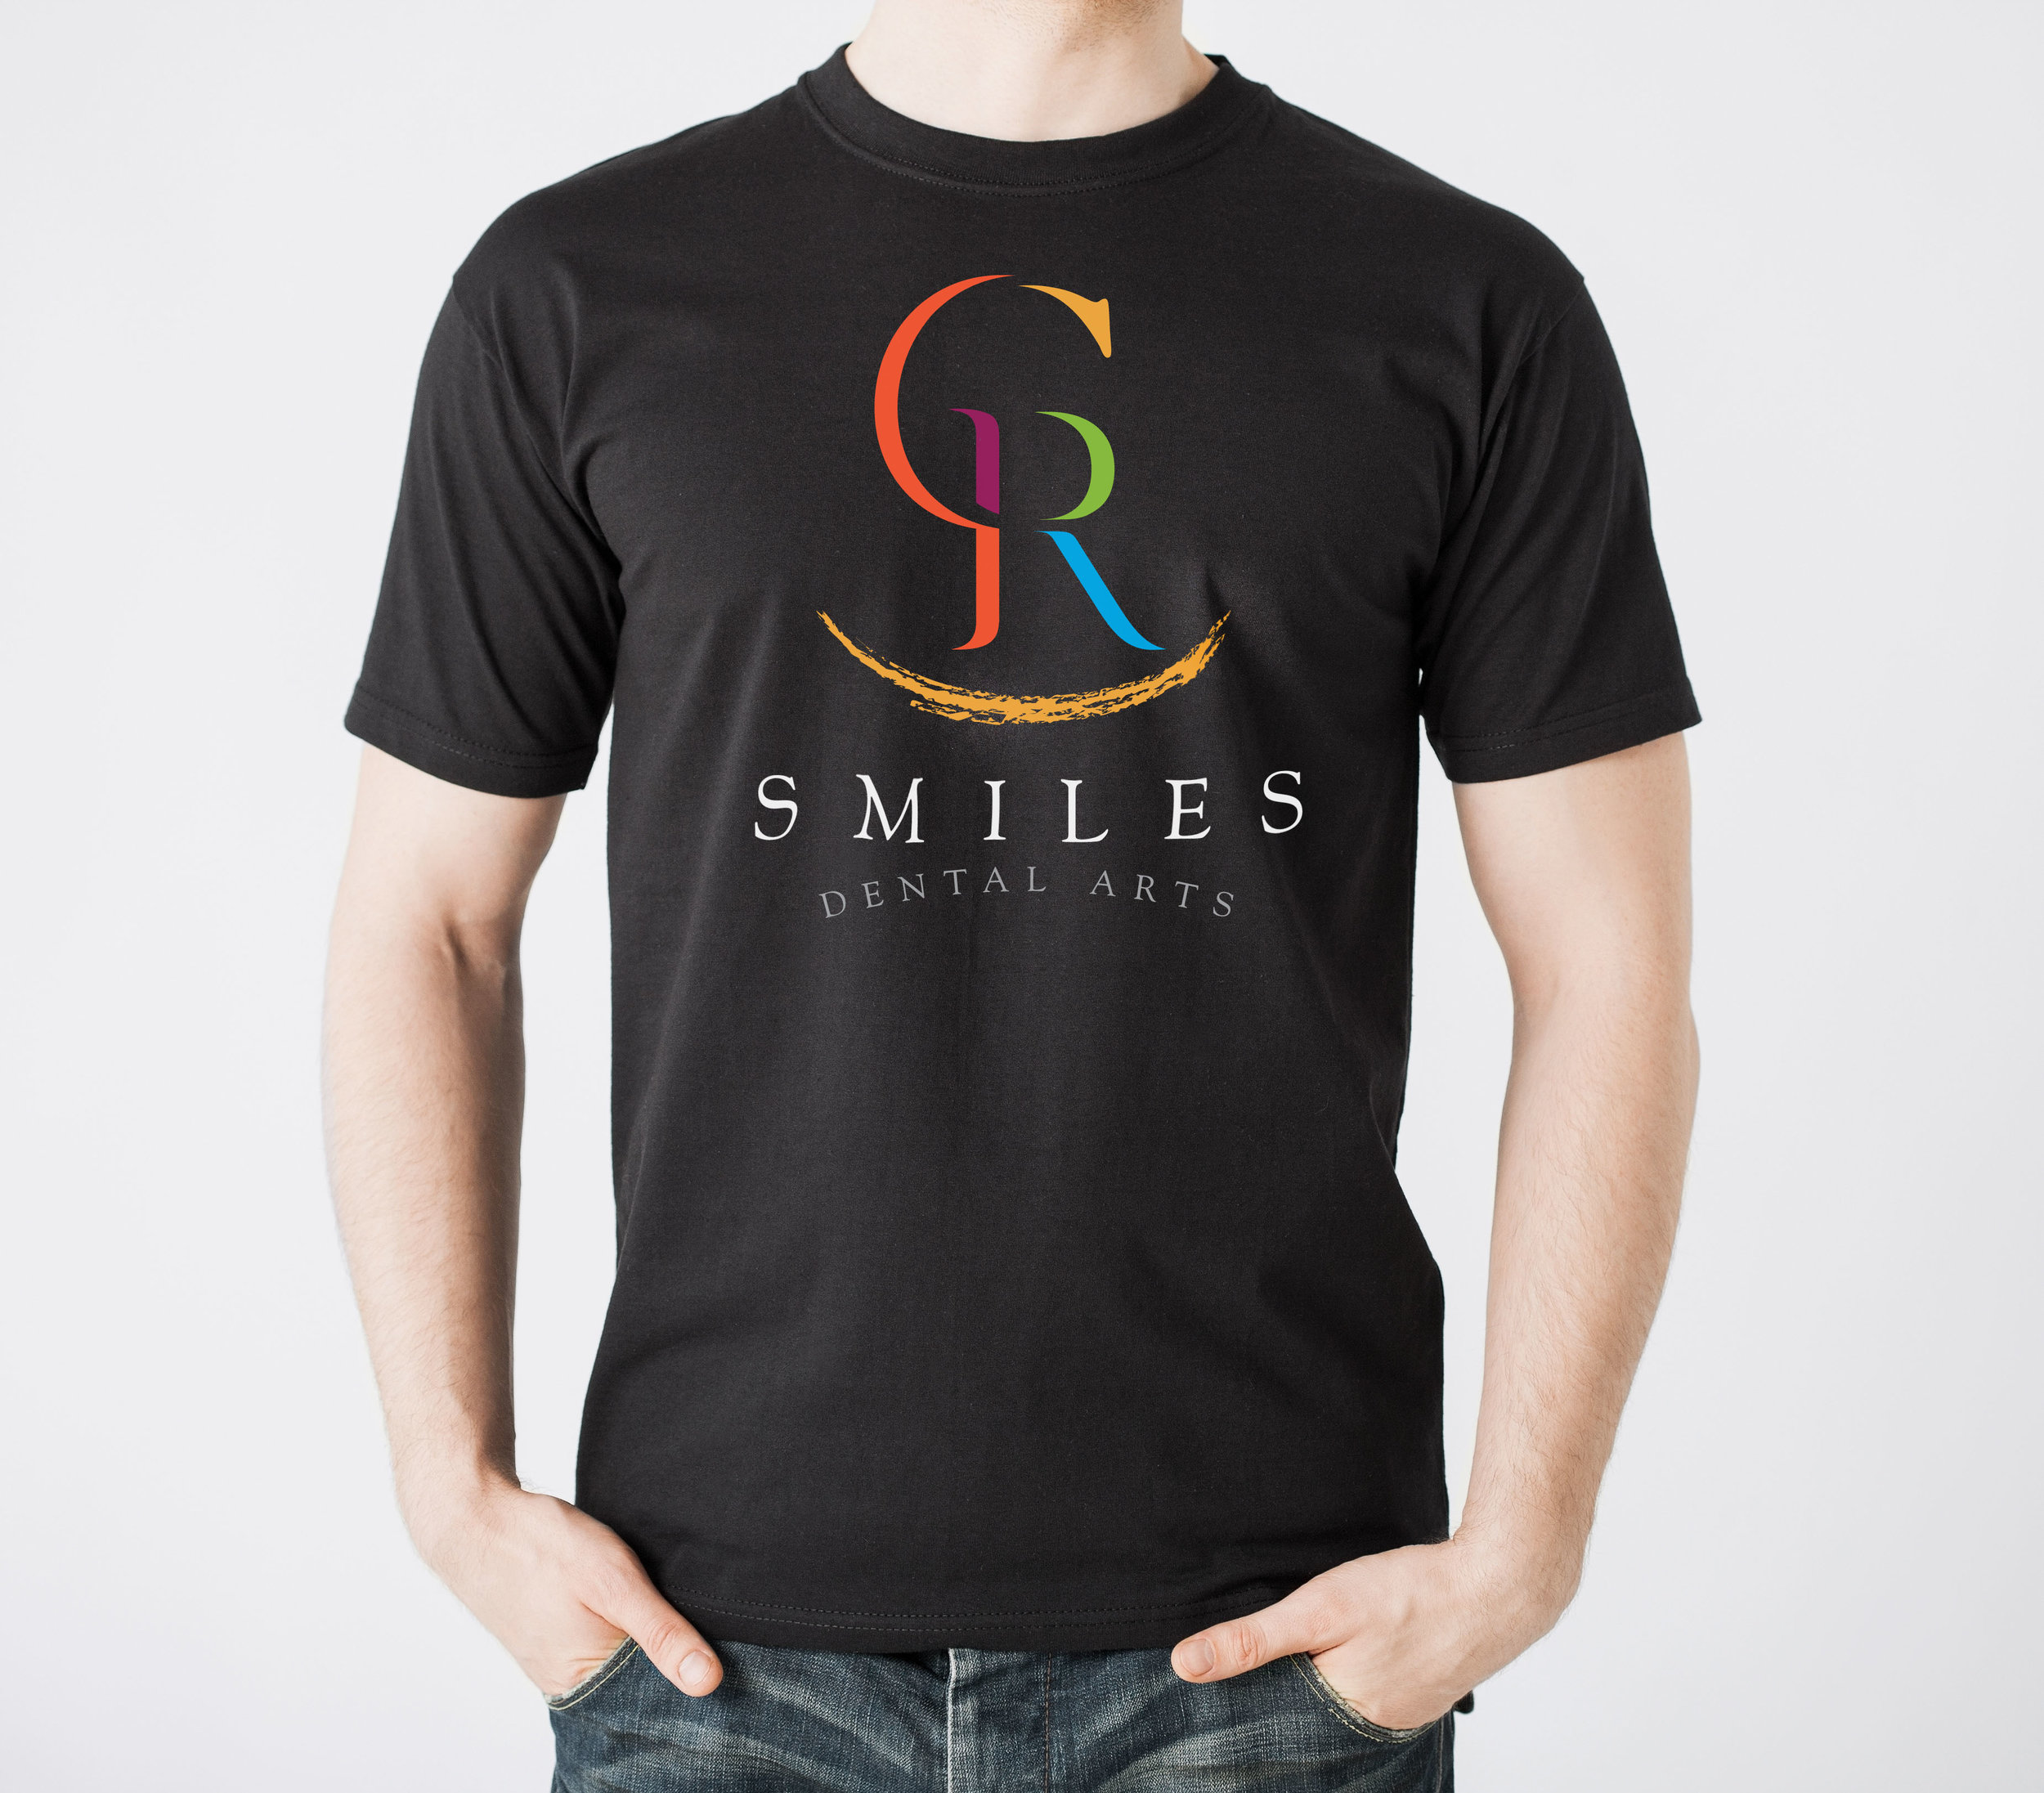 CR-Smiles_shirt.jpg